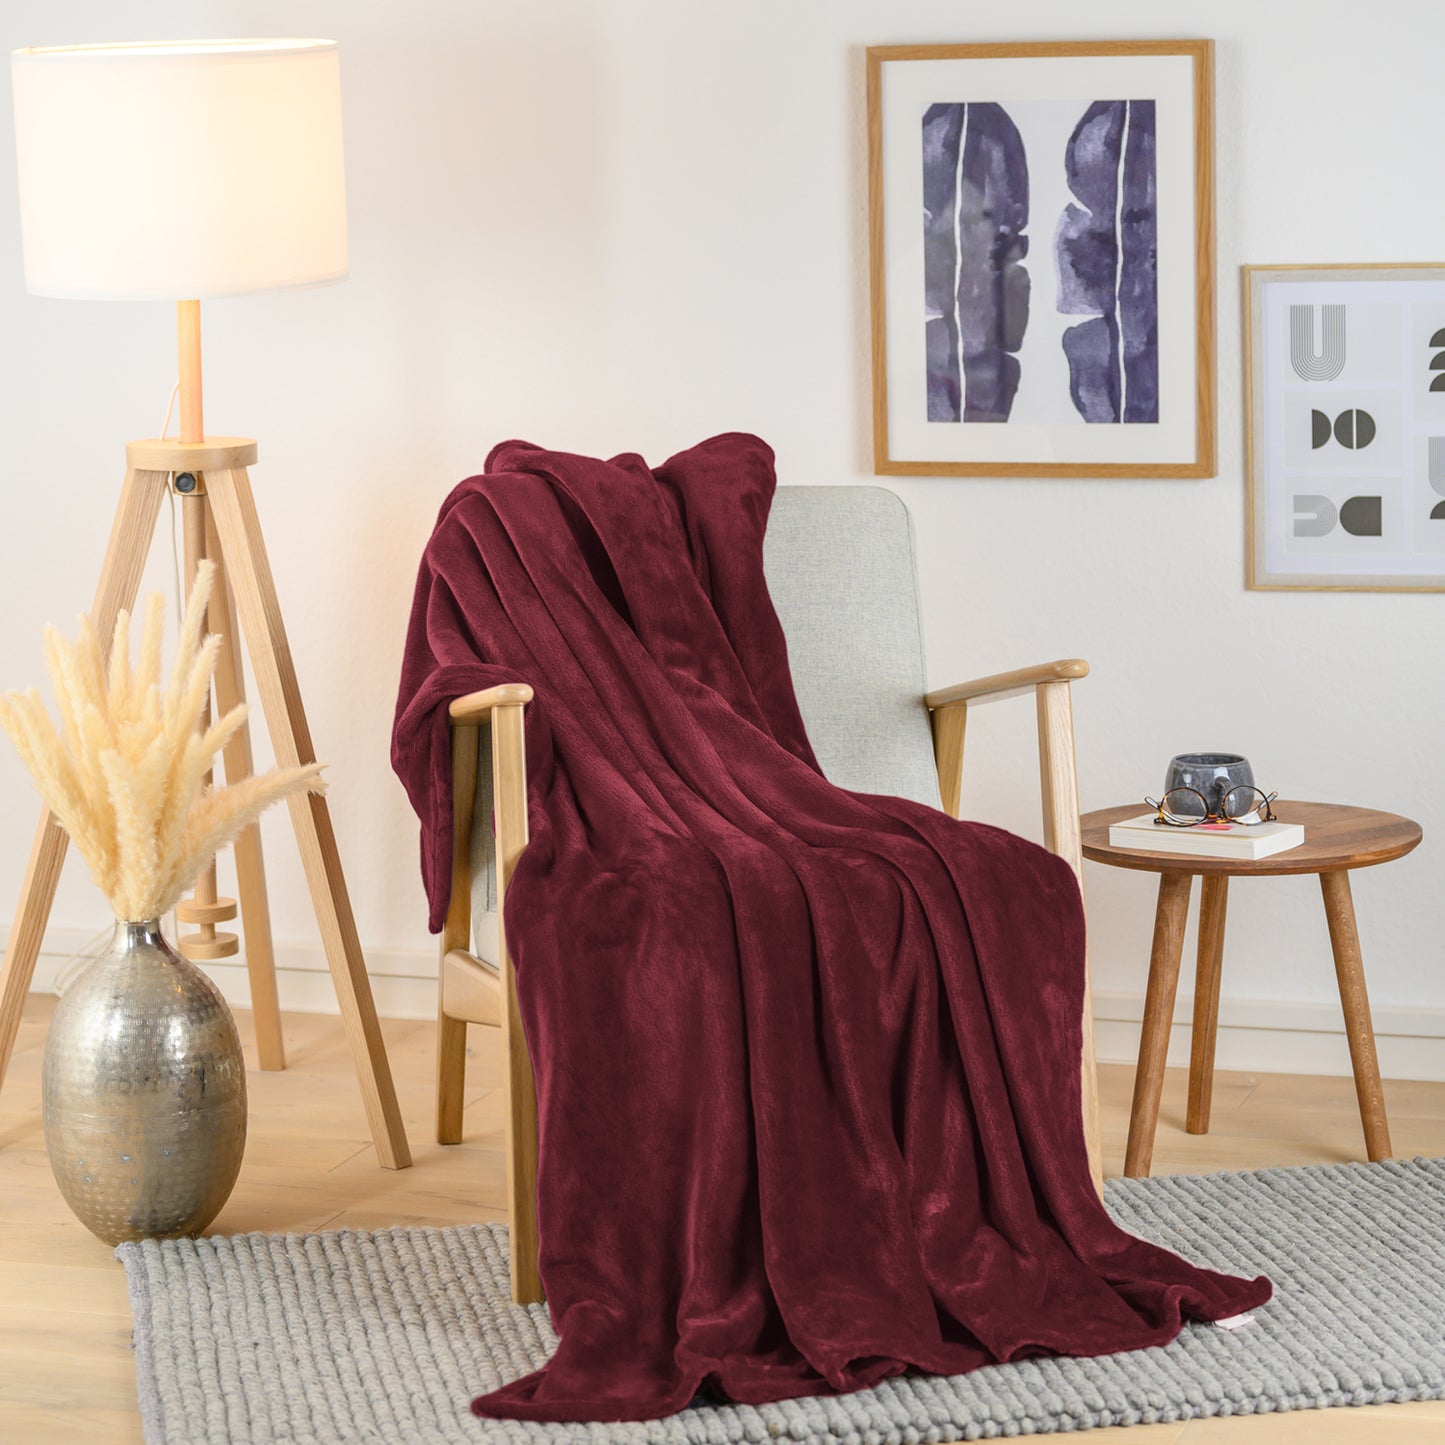 Weinrote Fleece-Kuscheldecke stilvoll über einen Sessel in einem Wohnzimmer drapiert, neben einem Beistelltisch mit einer Vase und einer Brille.